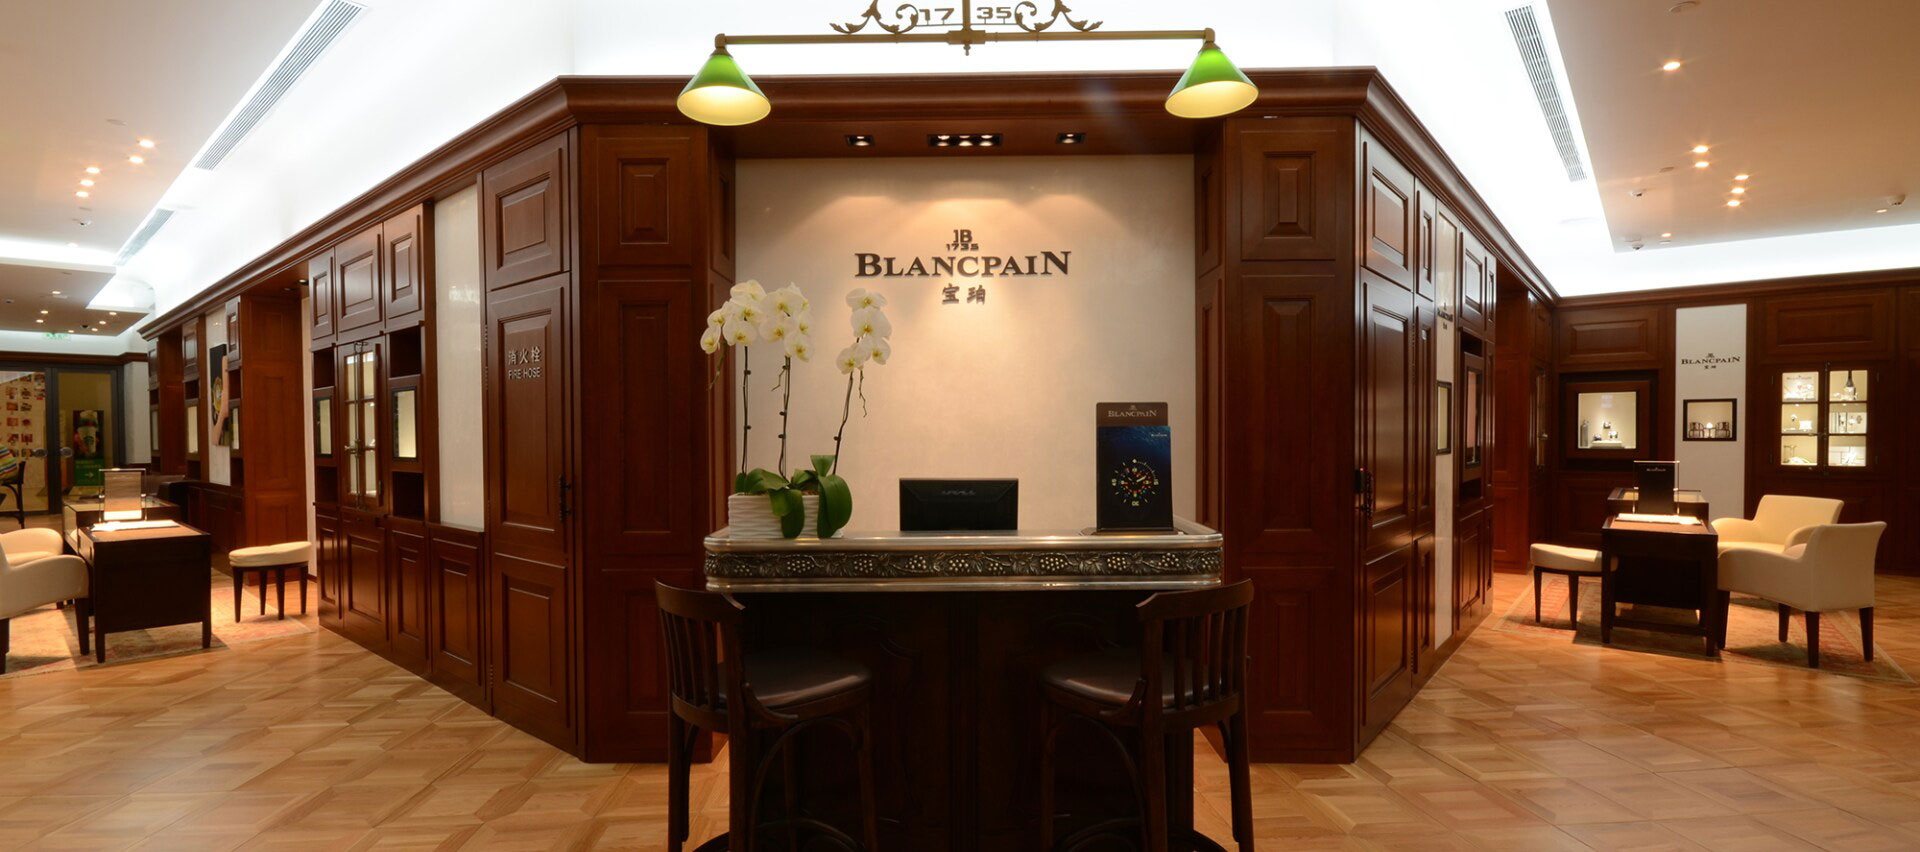 宝珀手表官方售后维修服务点中心介绍 | Blancpain